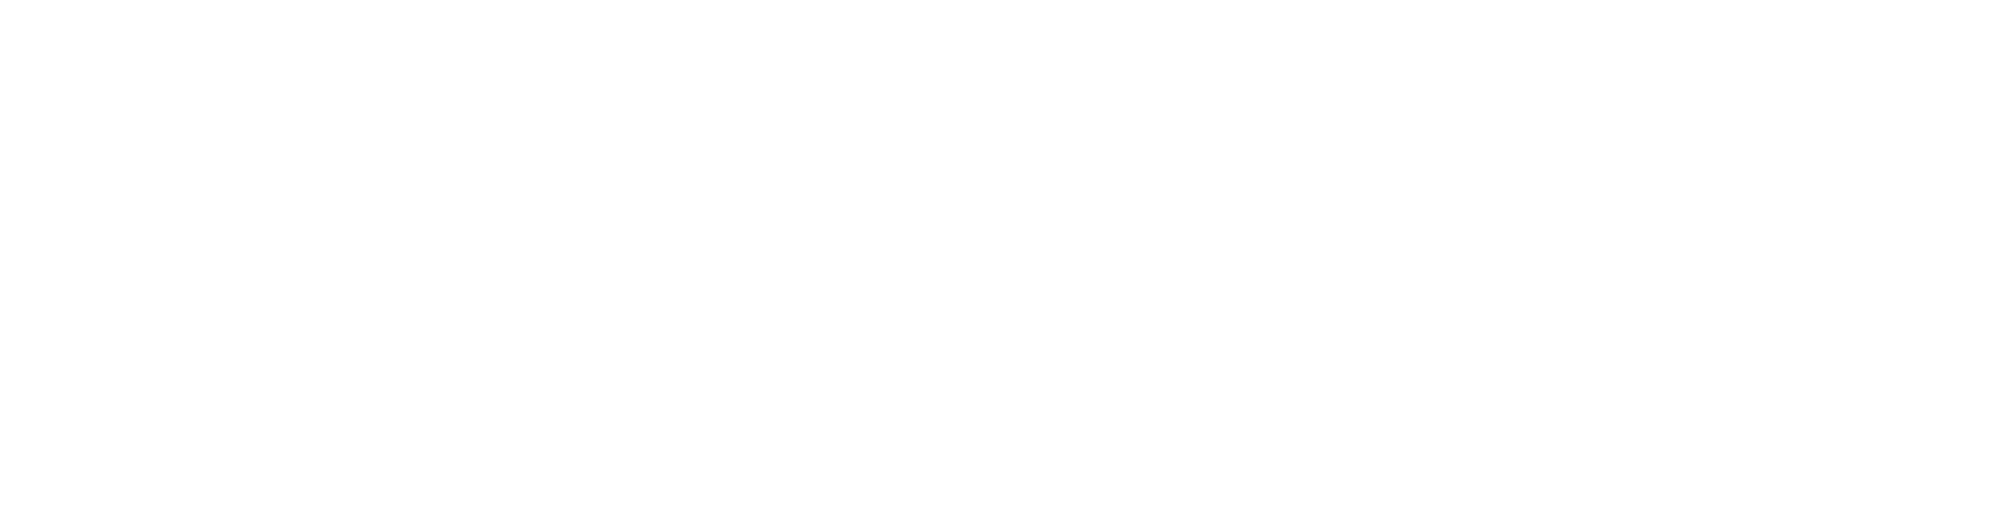 millie mummy melbourne